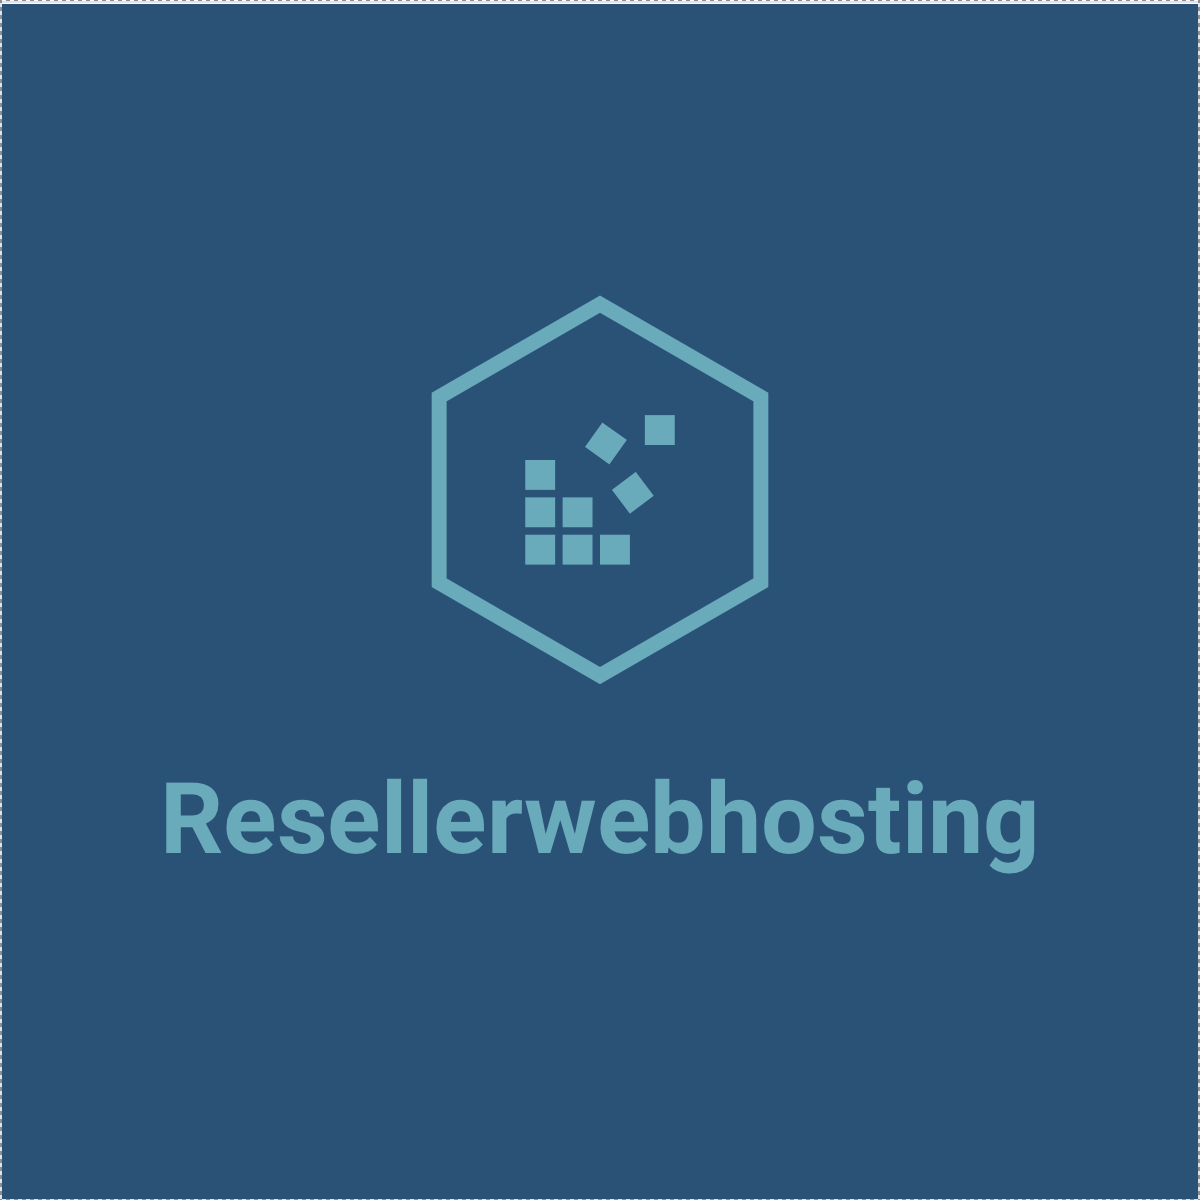 Resellerwebhosting